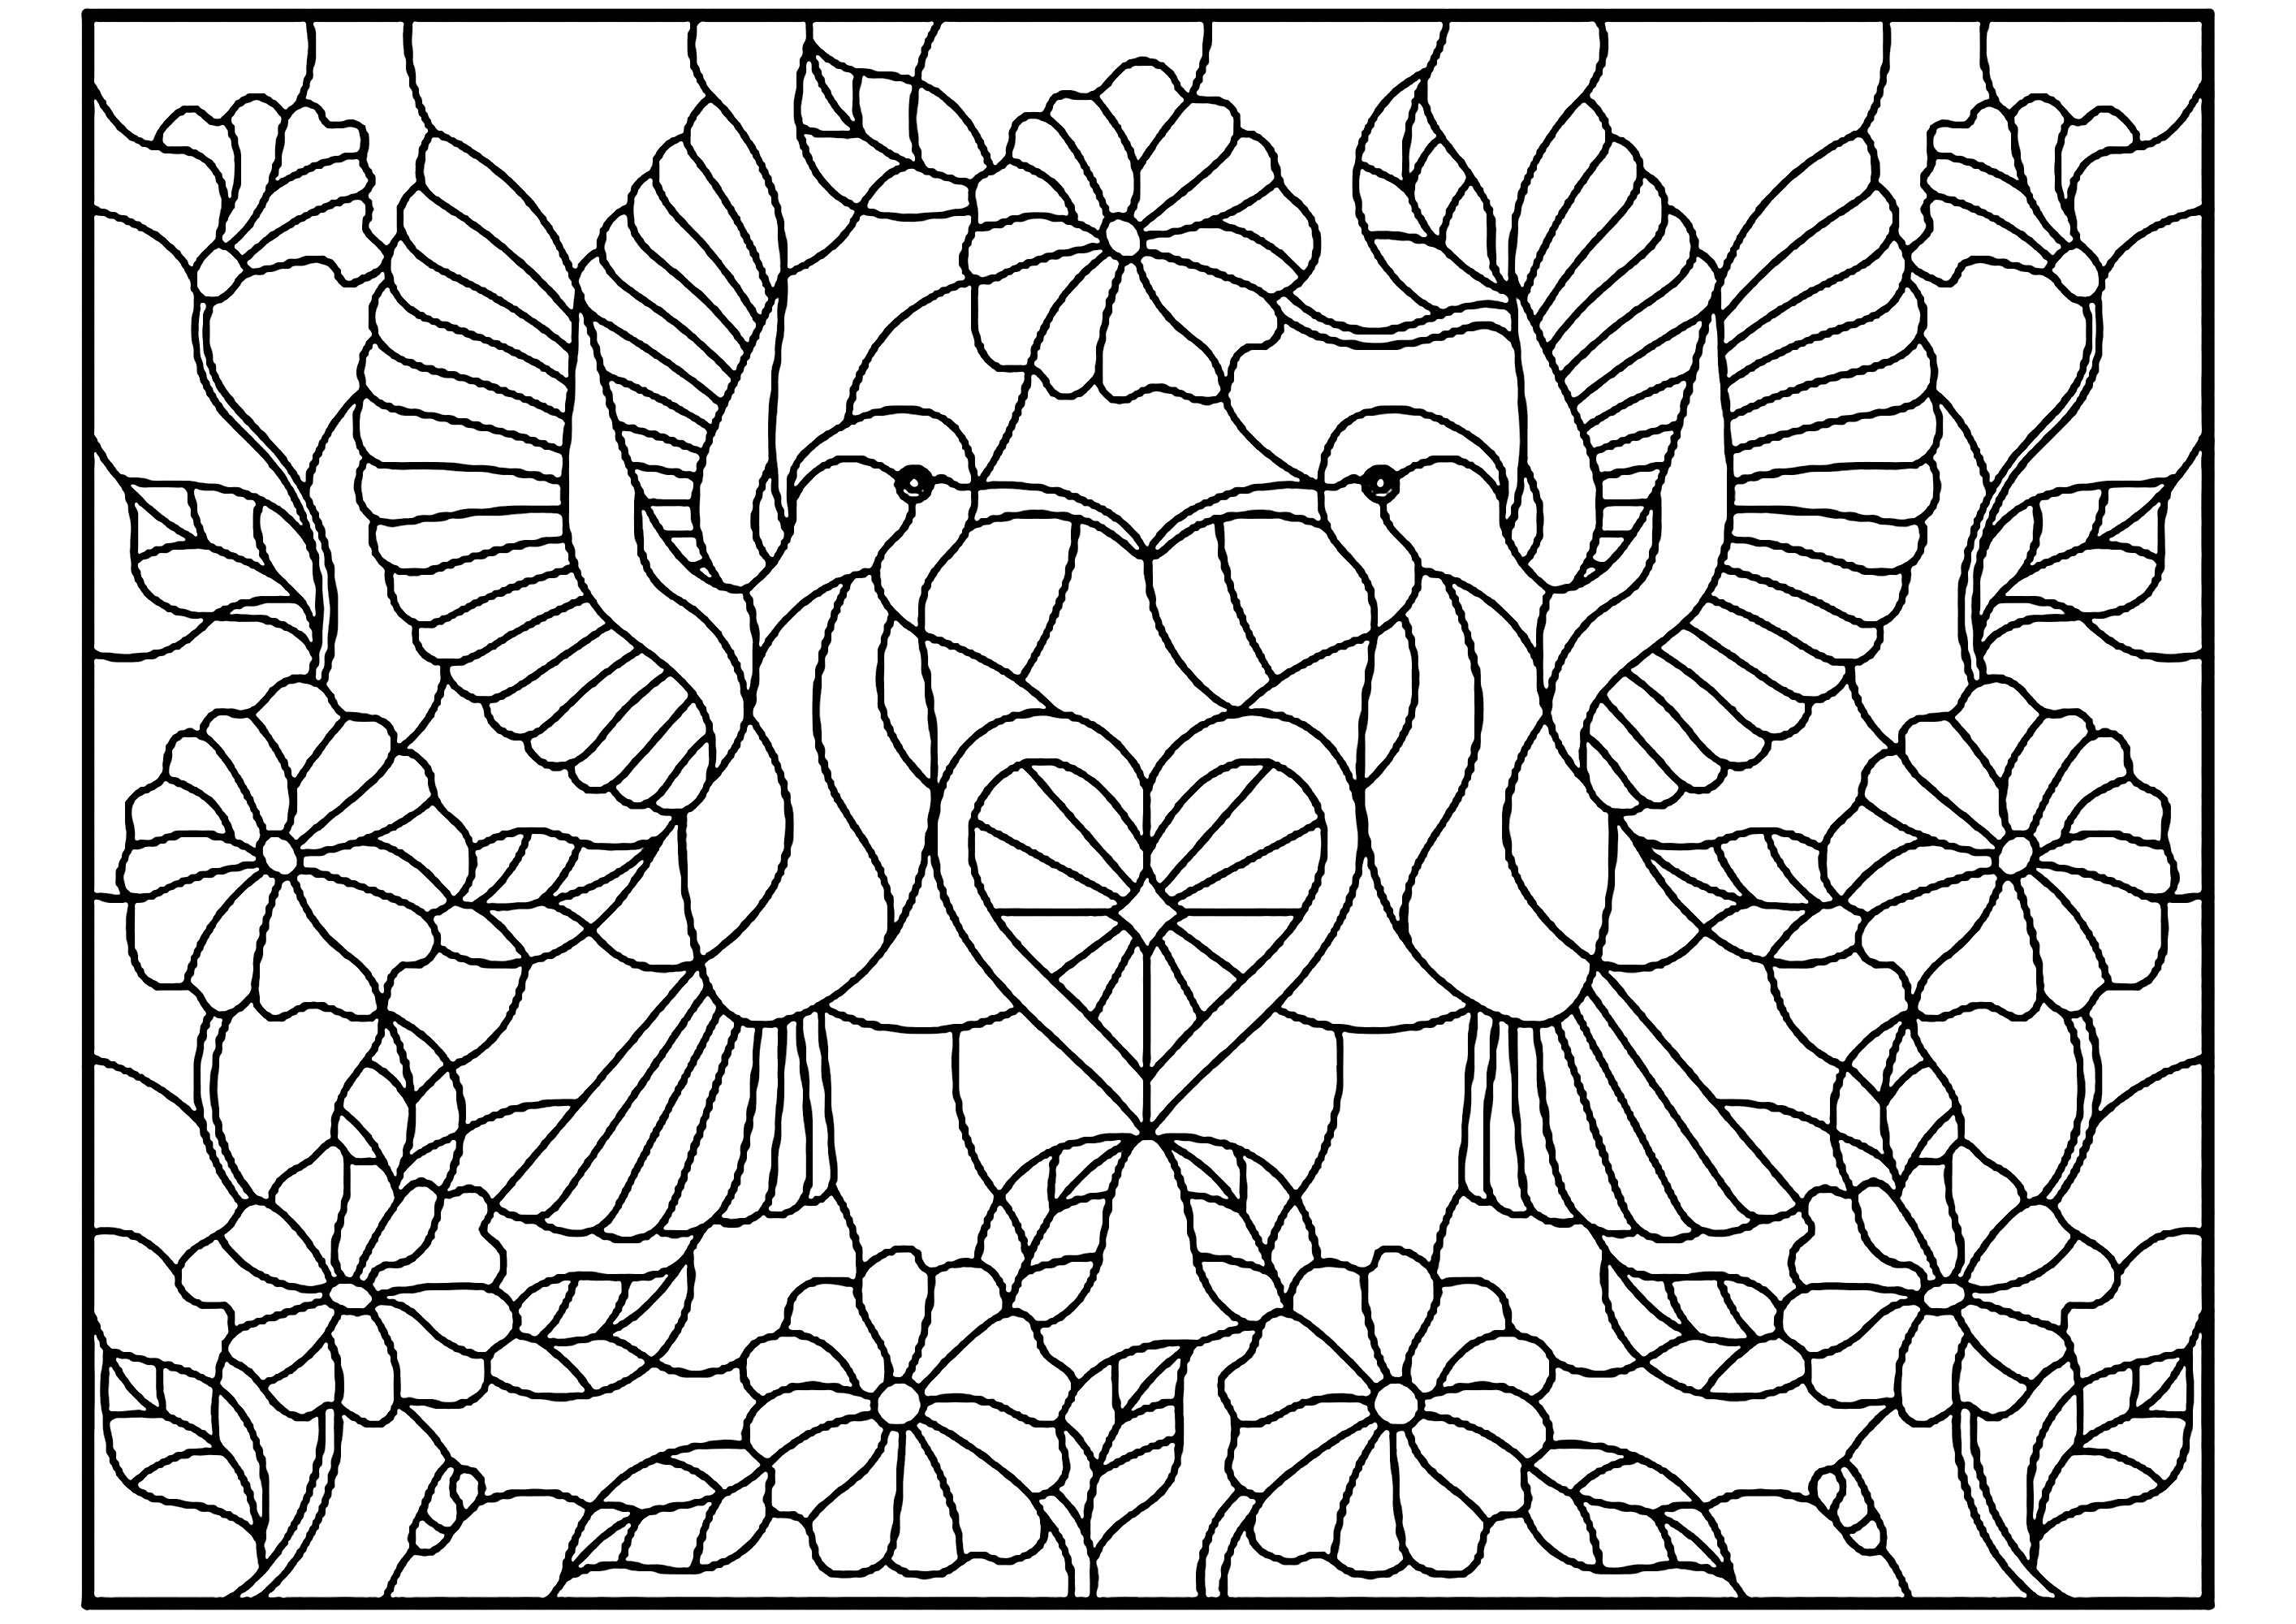 Deux oiseaux et un petit coeur au centre, style vitrail. Une symétrie parfaite pour un coloriage dont le rendu final sera sans doute exceptionnel, Source : 123rf   Artiste : zagory